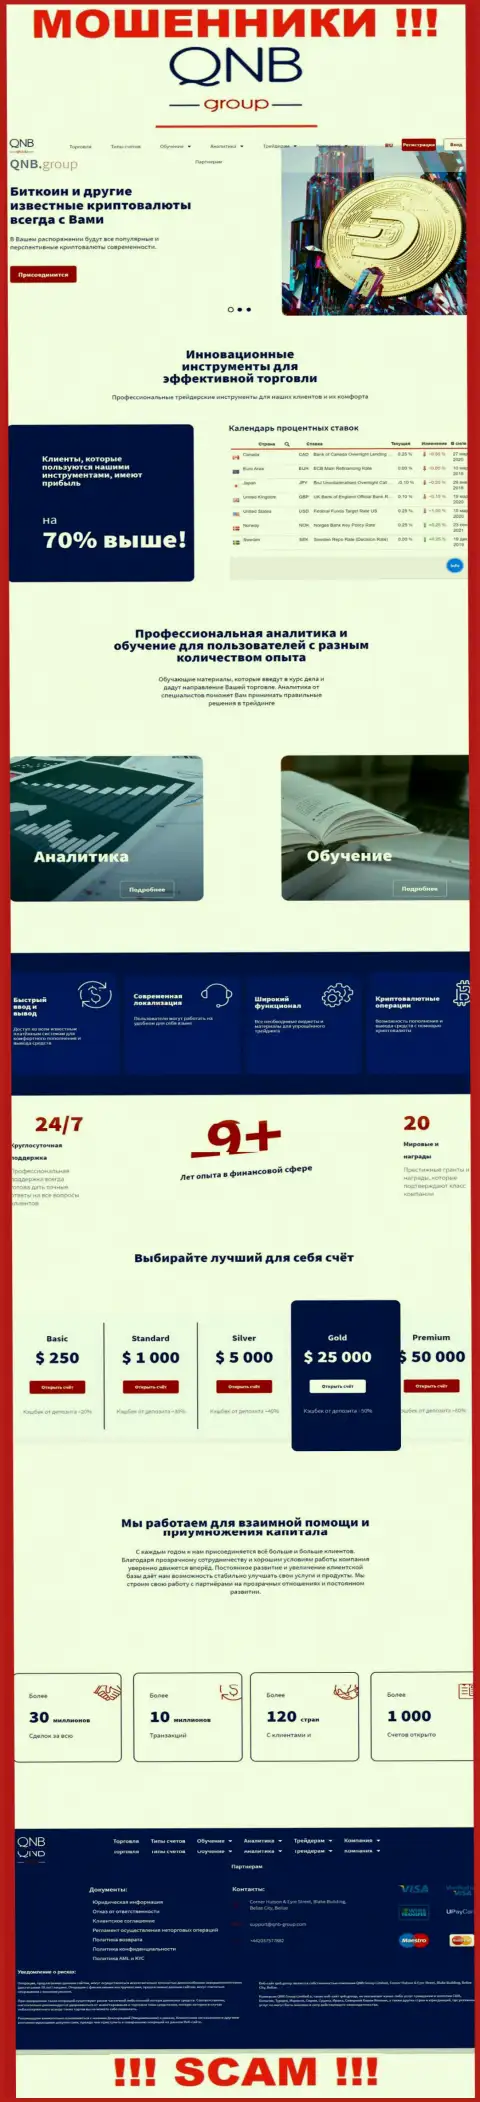 Официальный web-портал мошенников КьюНБ Групп Лтд, переполненный сведениями для лохов